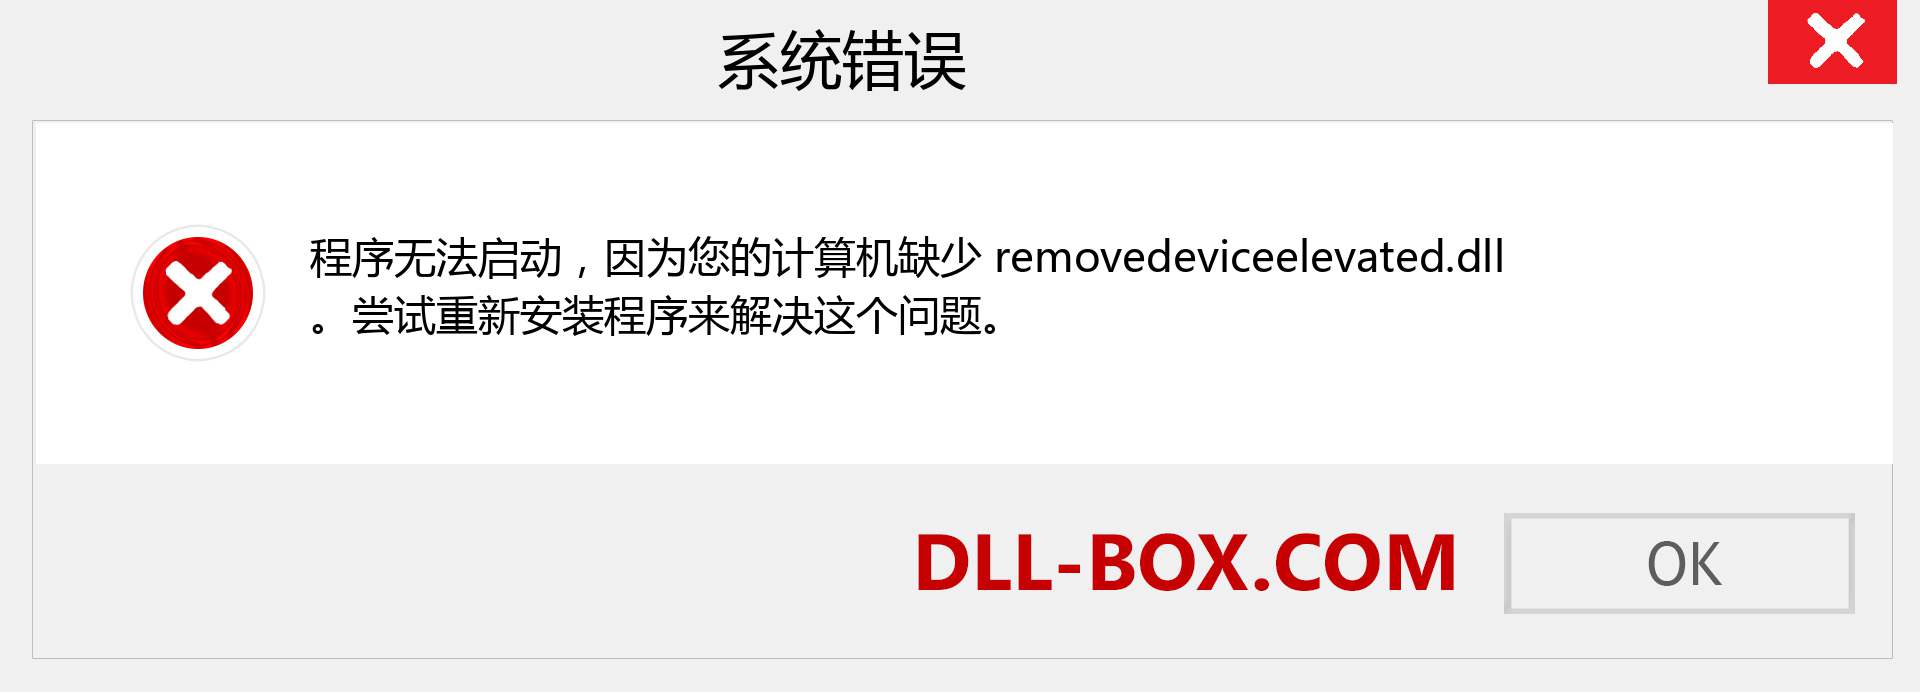 removedeviceelevated.dll 文件丢失？。 适用于 Windows 7、8、10 的下载 - 修复 Windows、照片、图像上的 removedeviceelevated dll 丢失错误